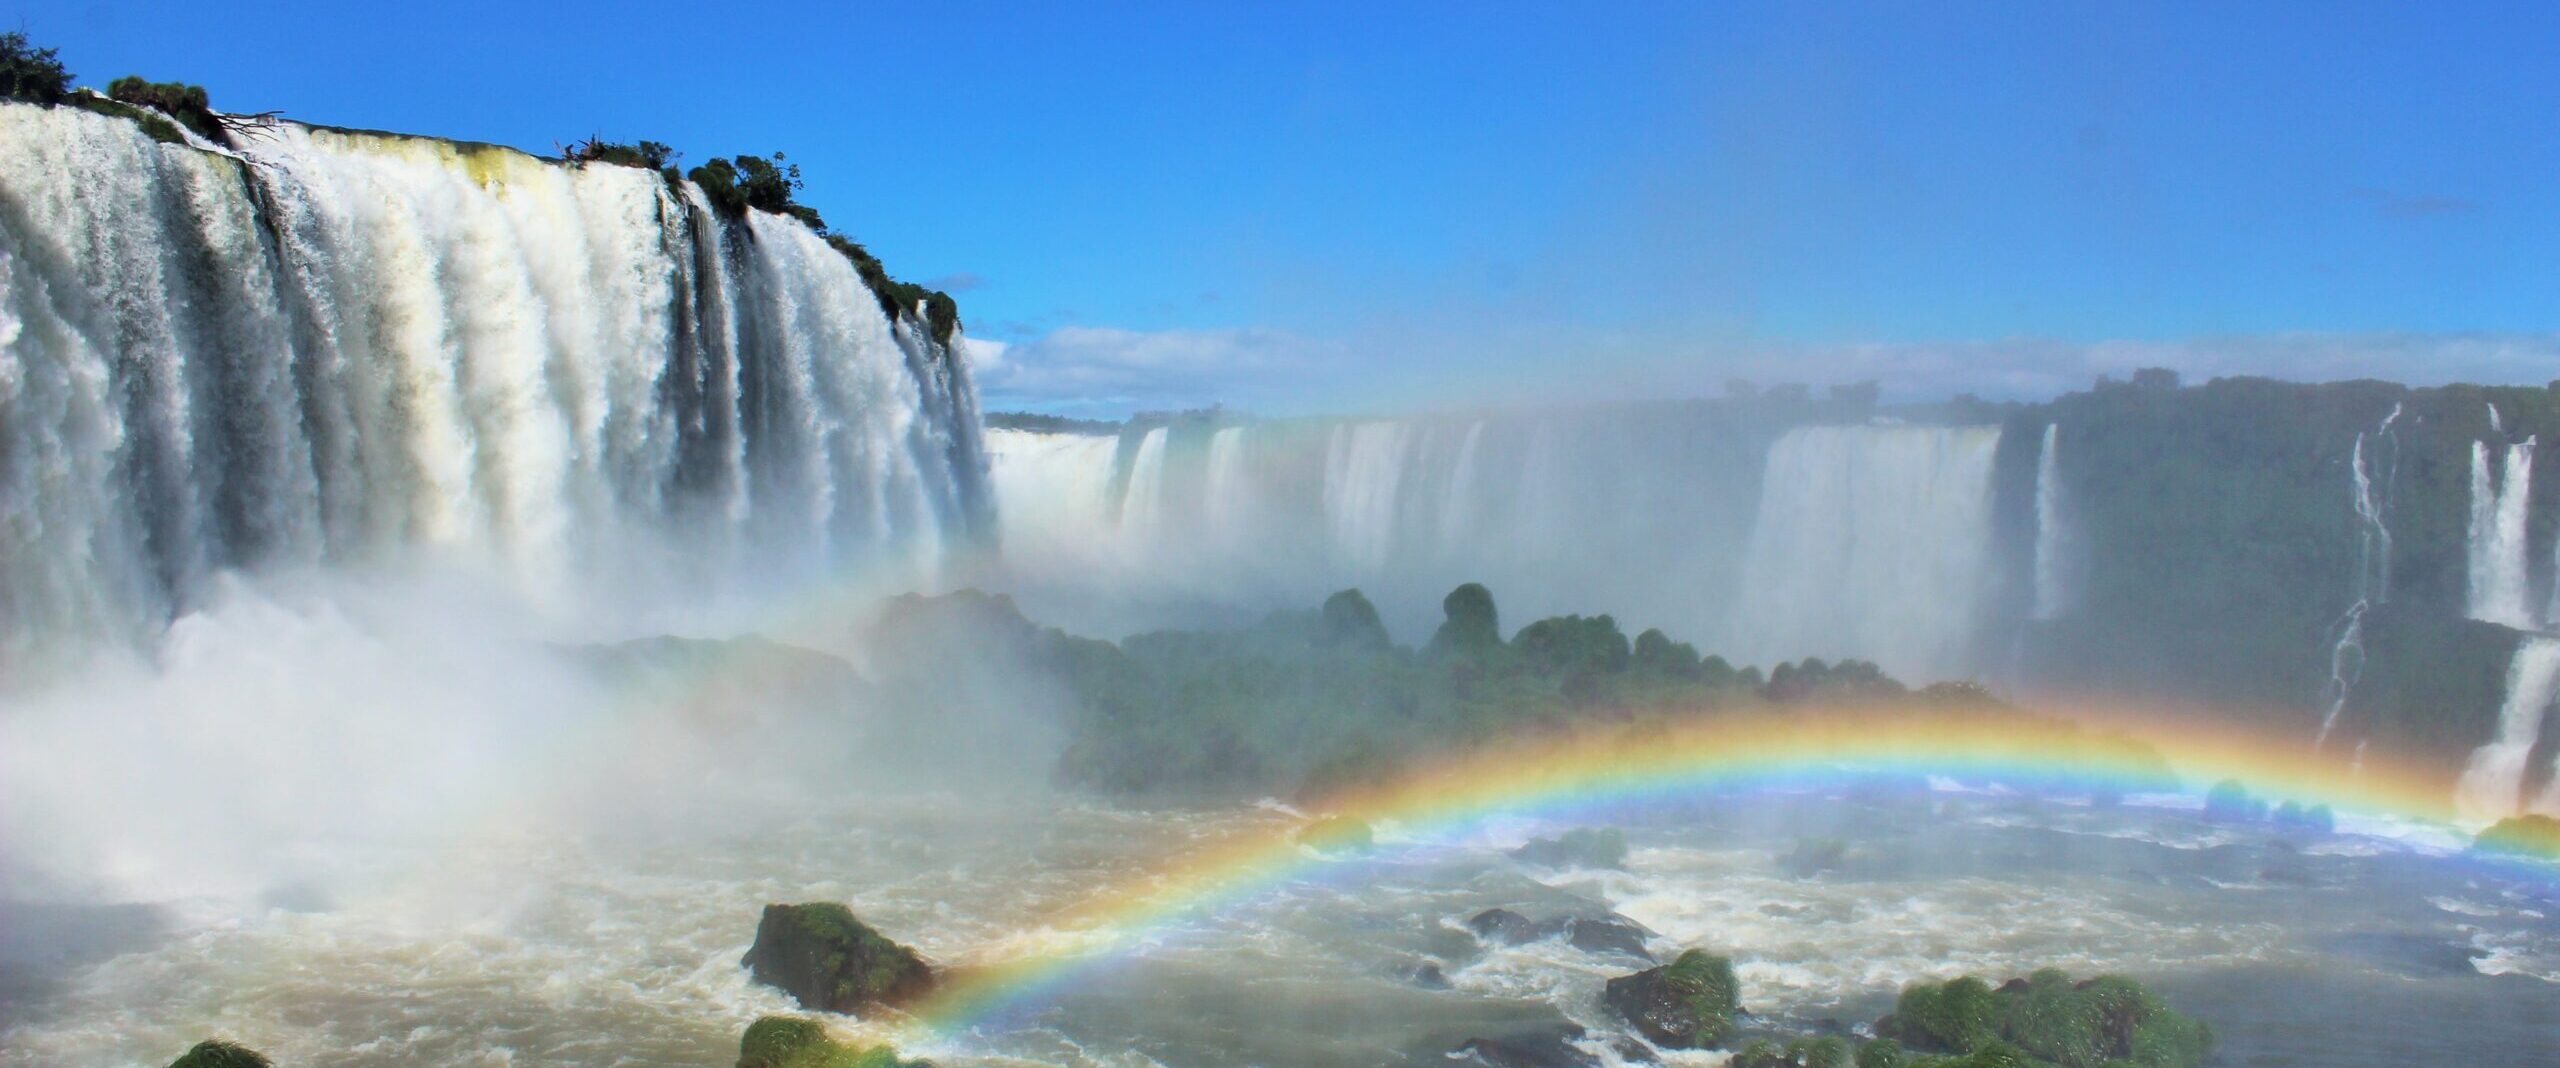 40 – Die Wasserfälle von Iguaçu